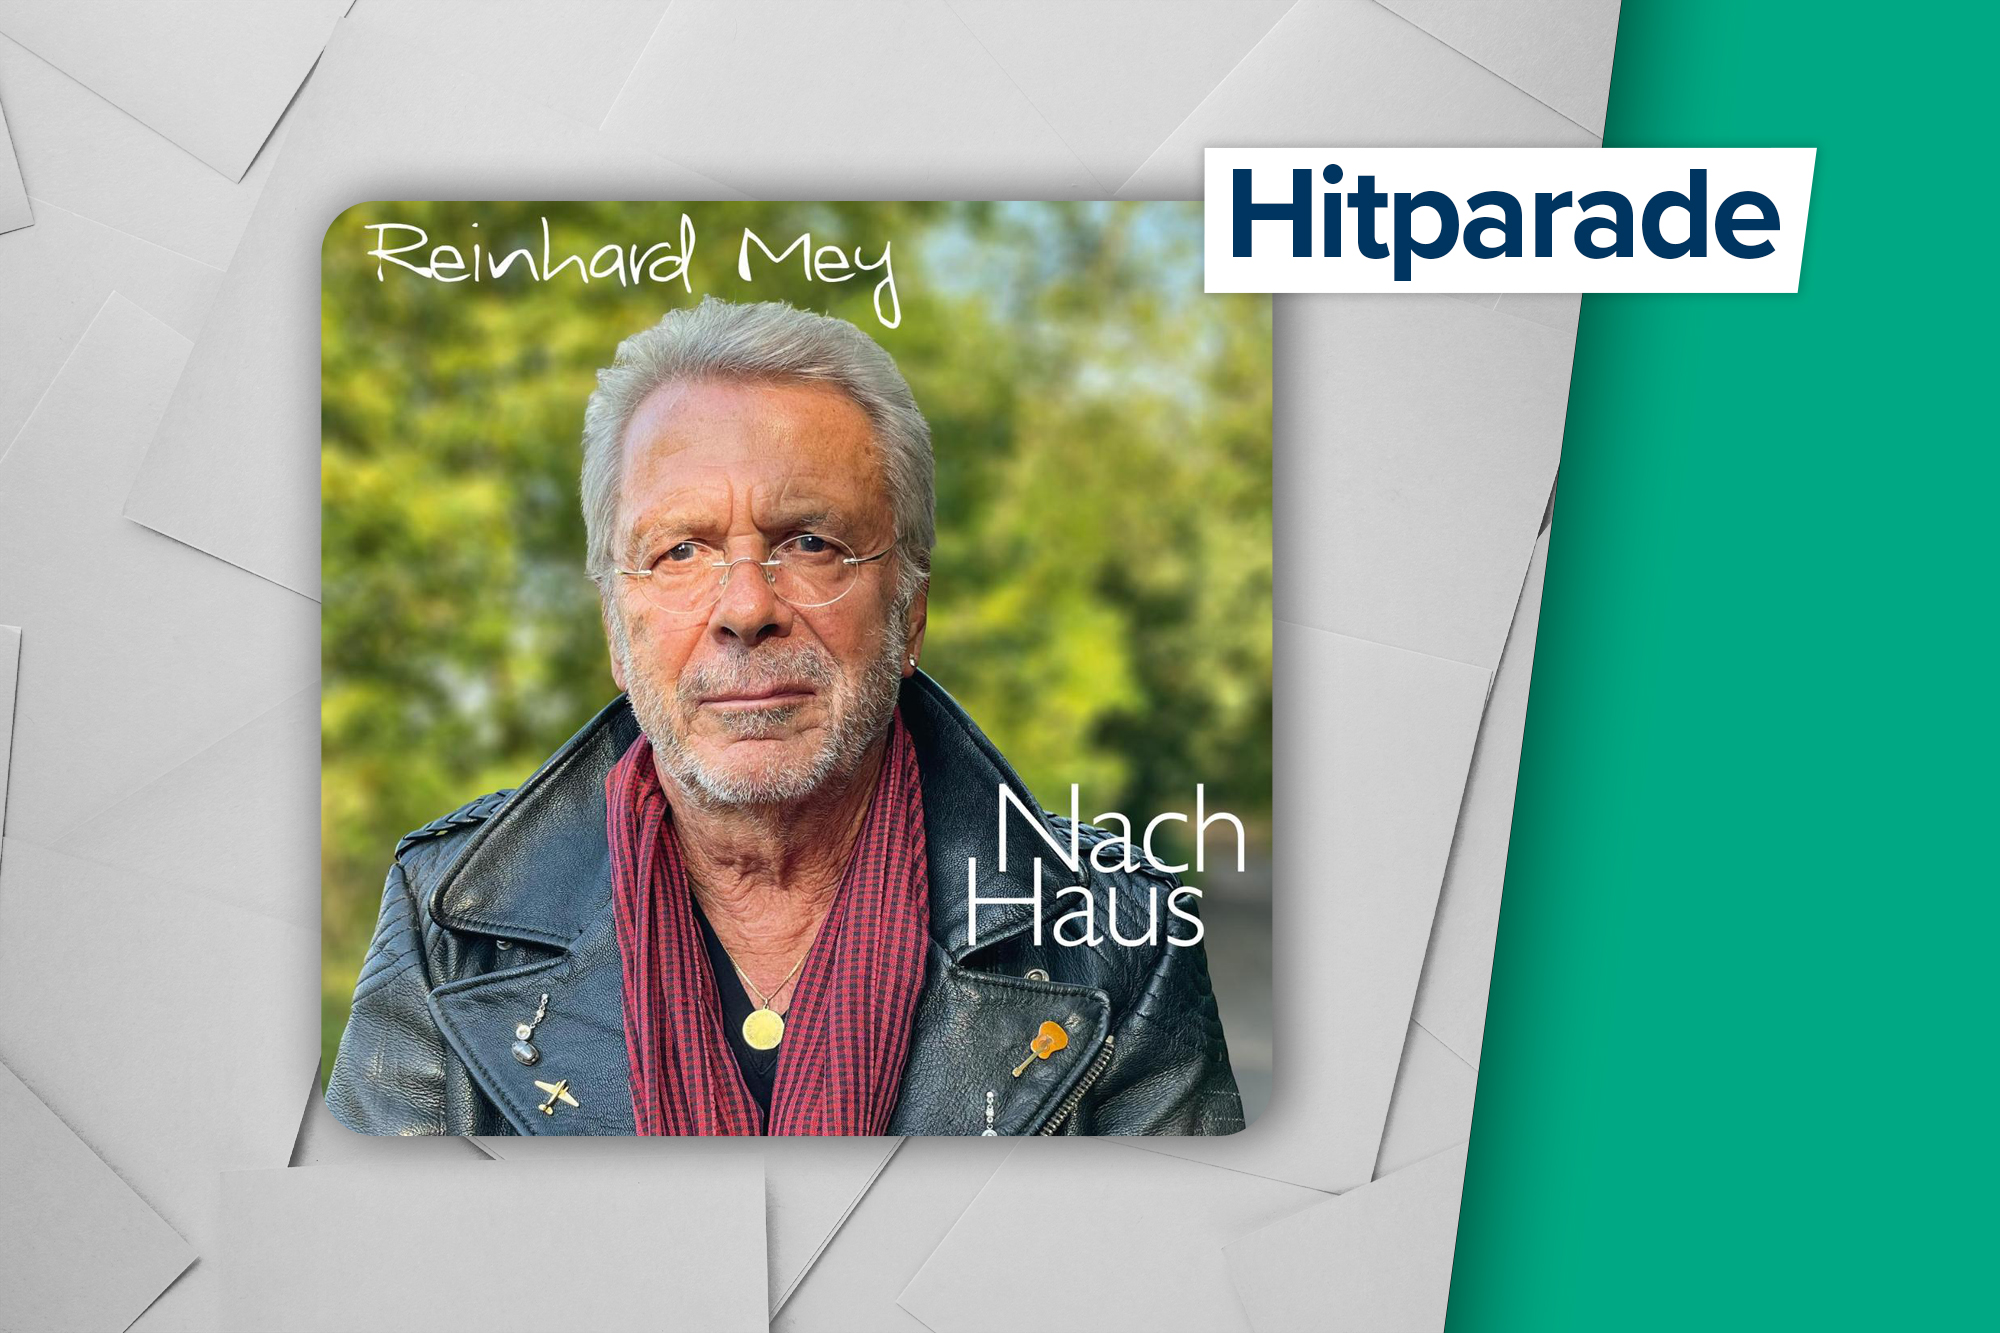 Höchster Neueinstieg in der Hitparade: Du hast mich getragen aus dem Album "Nach Haus" von Reinhard Mey (Label: Odeon)